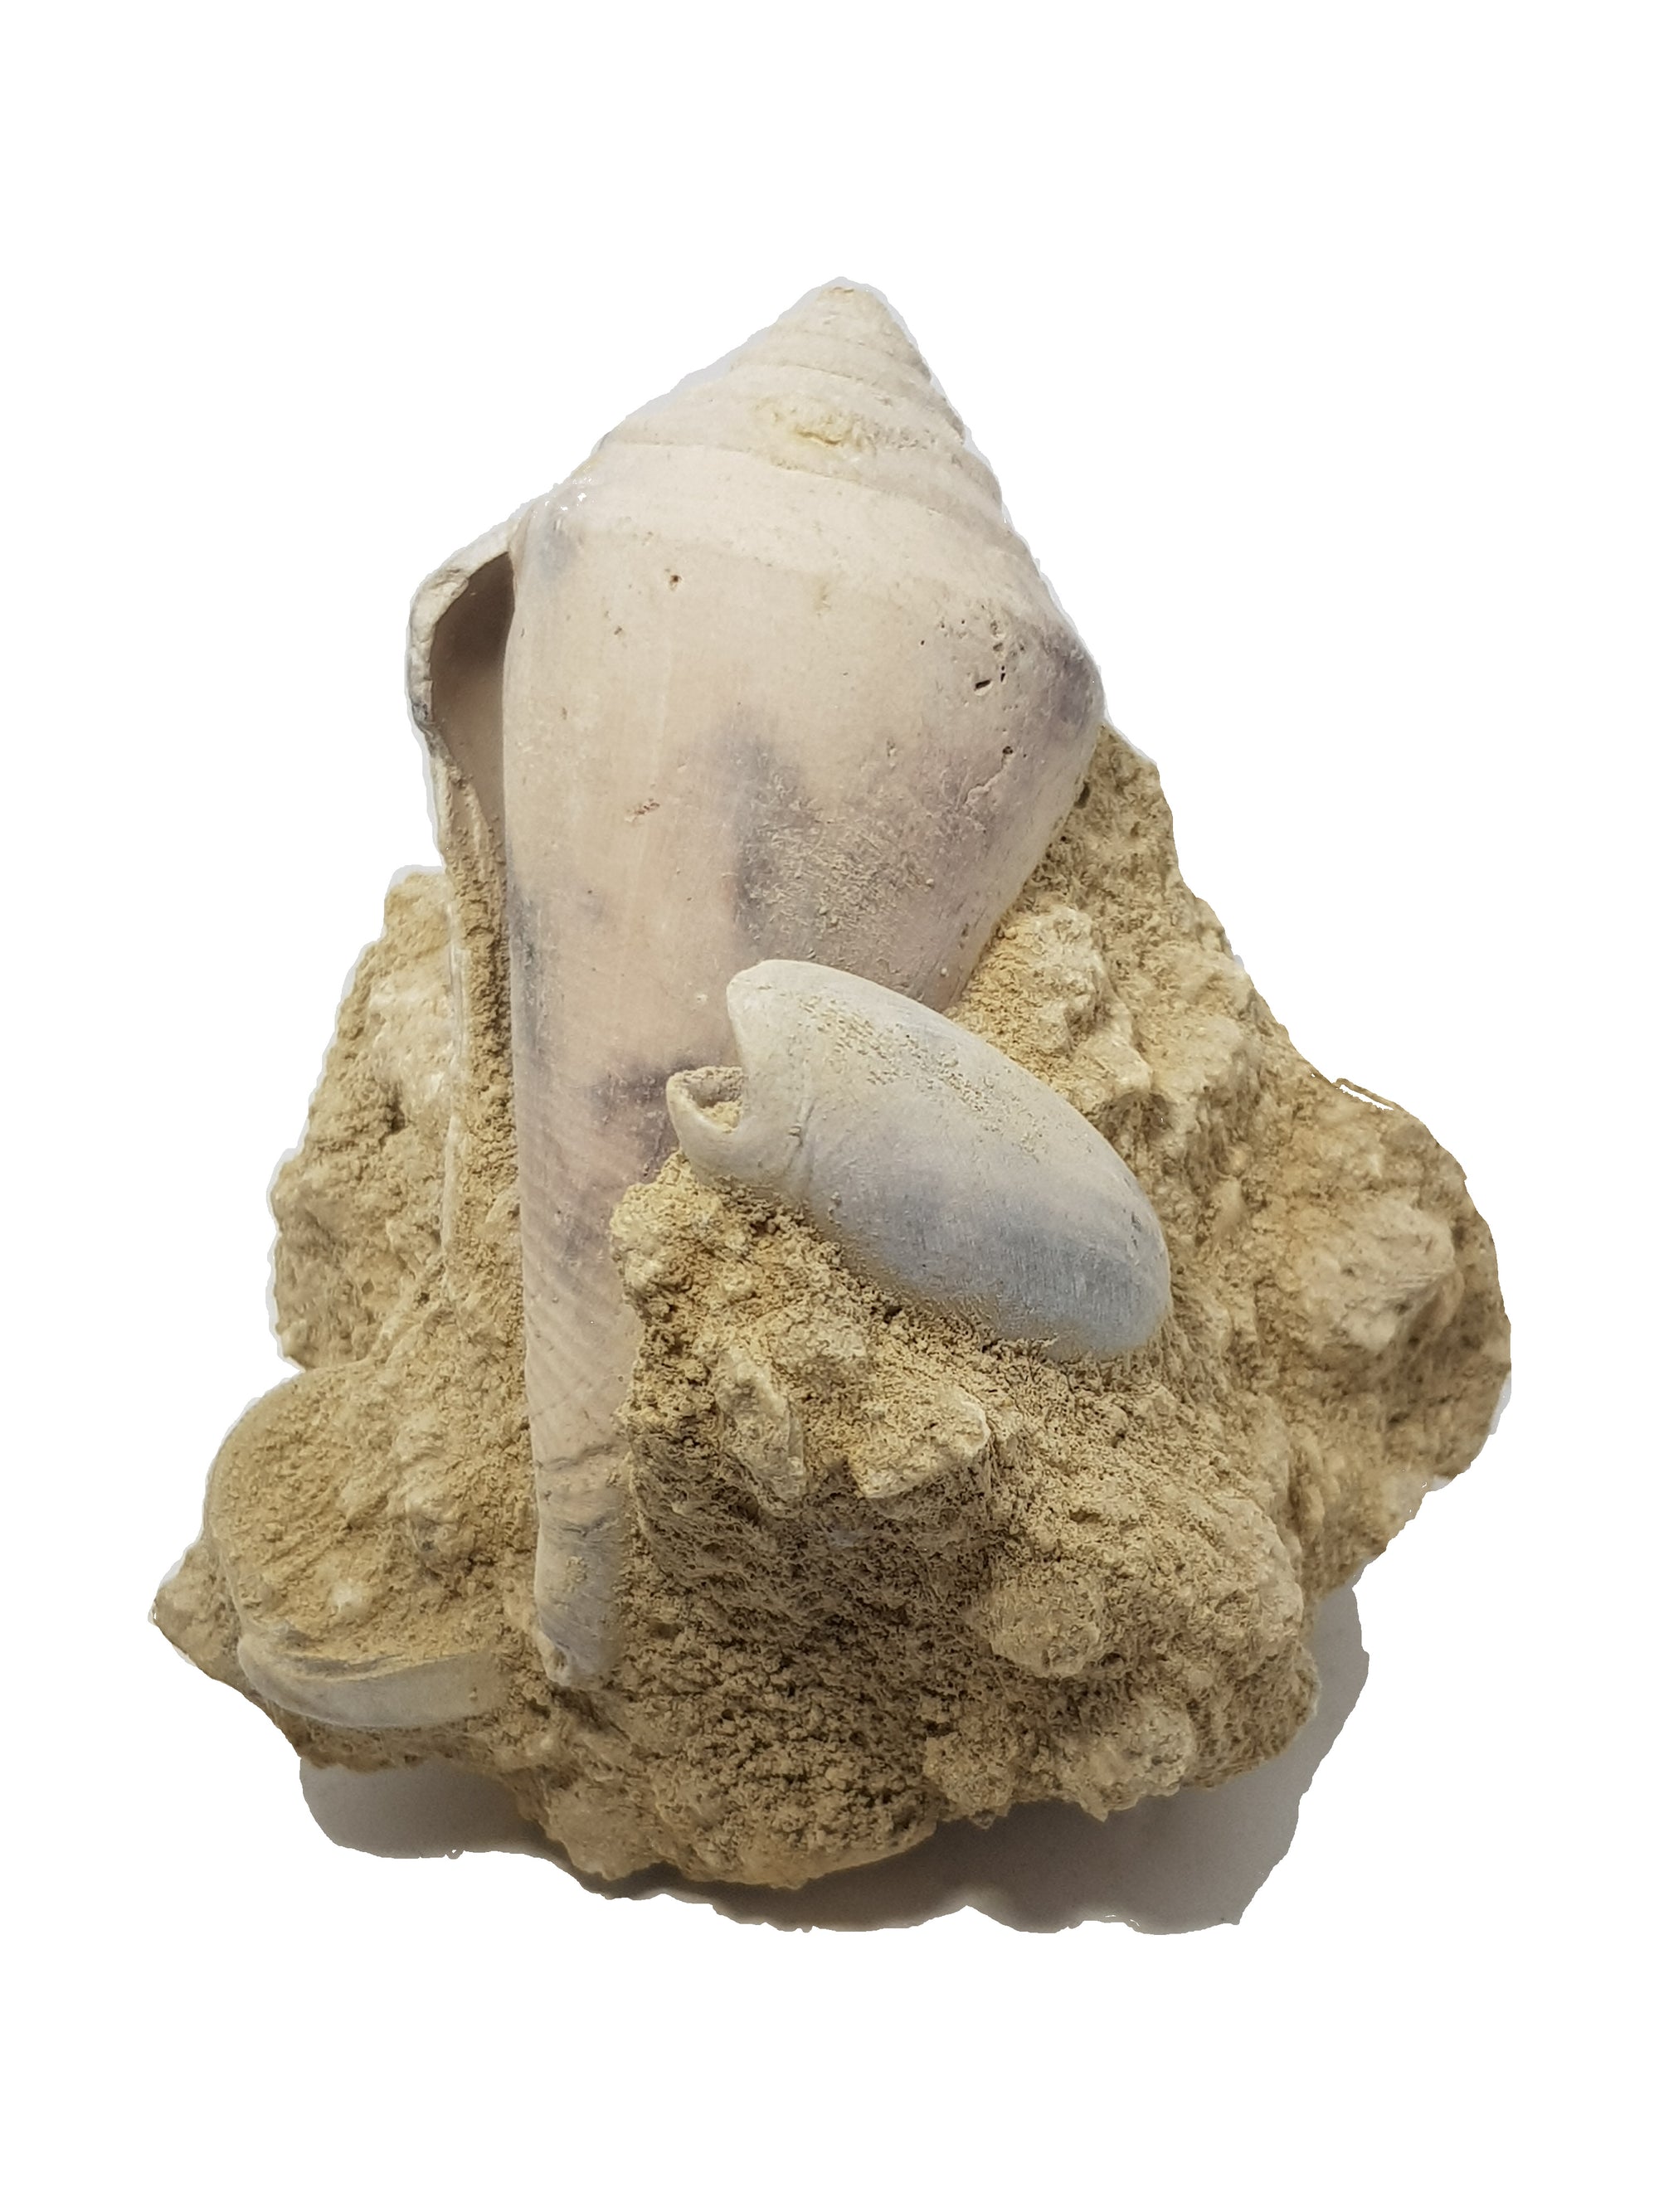 The Eocene. 56 million - 34 million years ago. Image of athletus shell